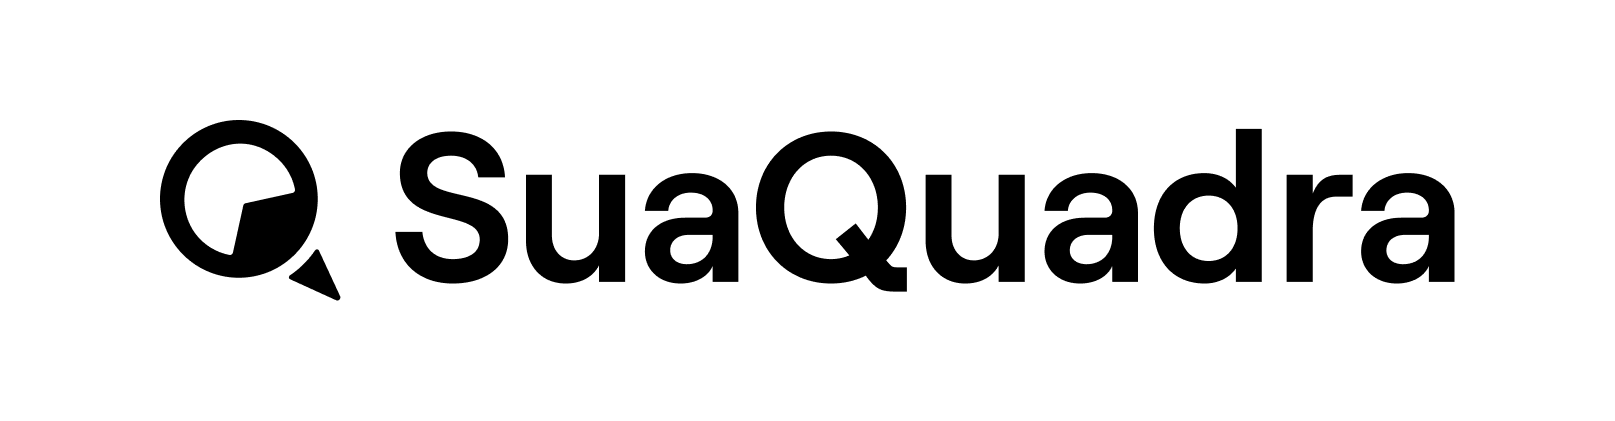 Logotipo em preto sobre fundo transparente